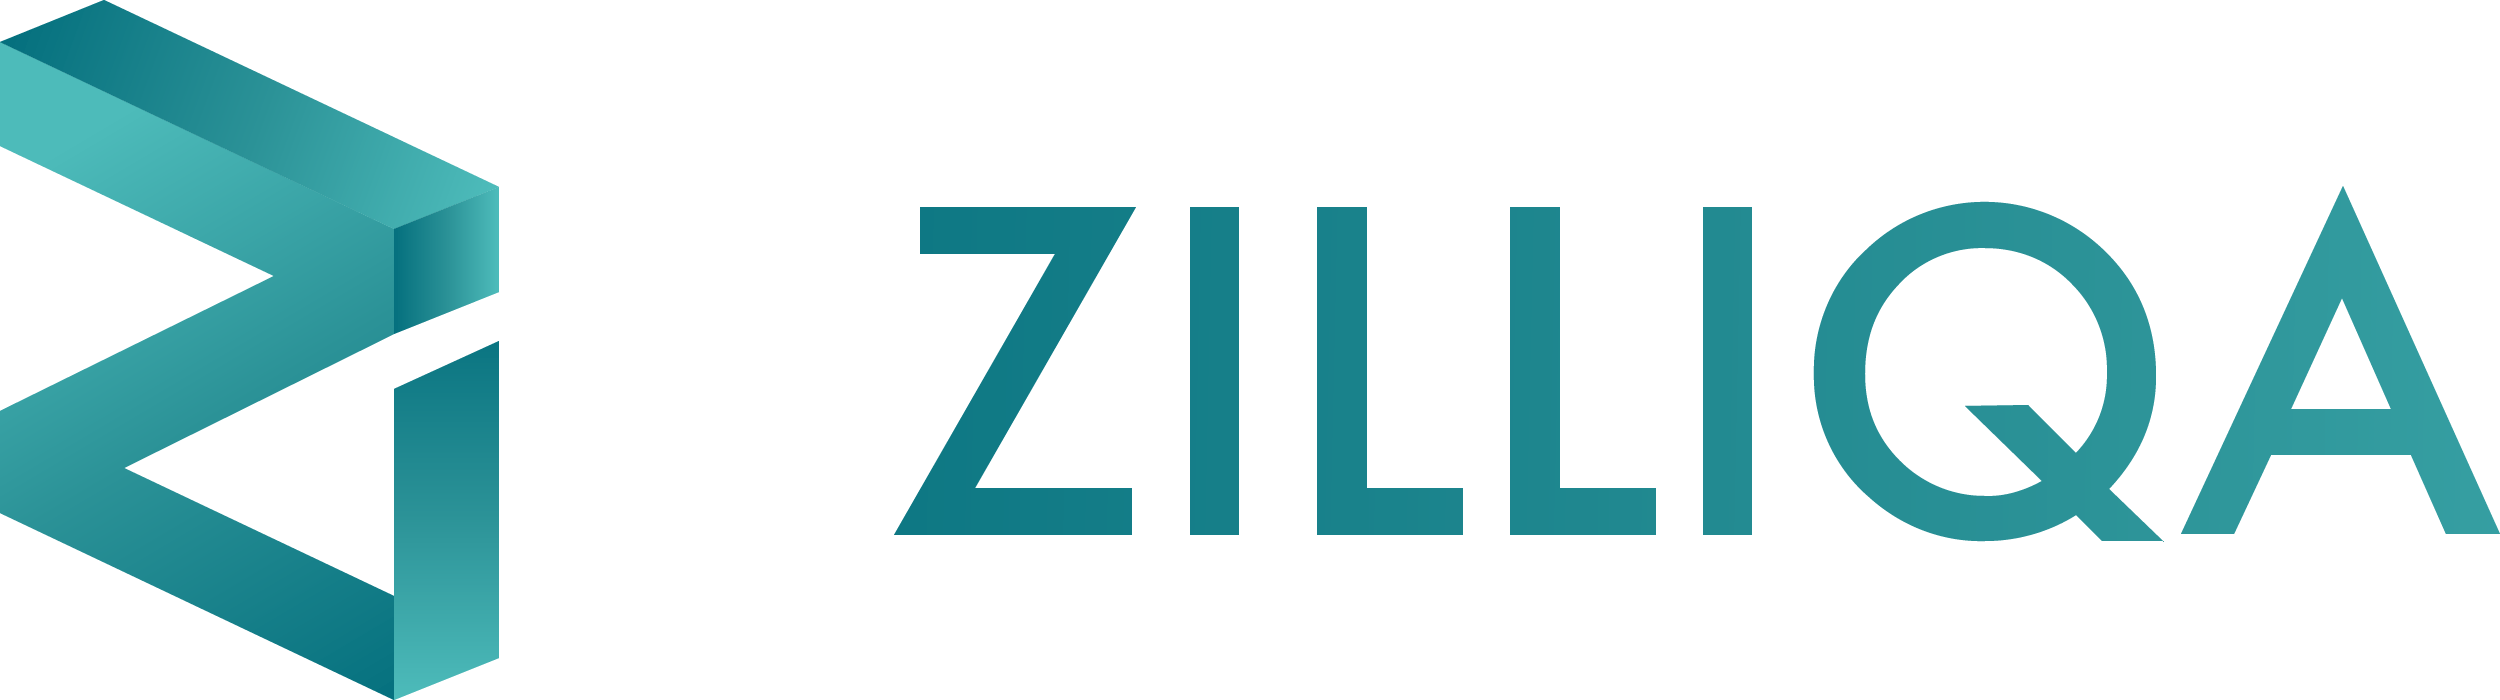 Logo Zilliqa